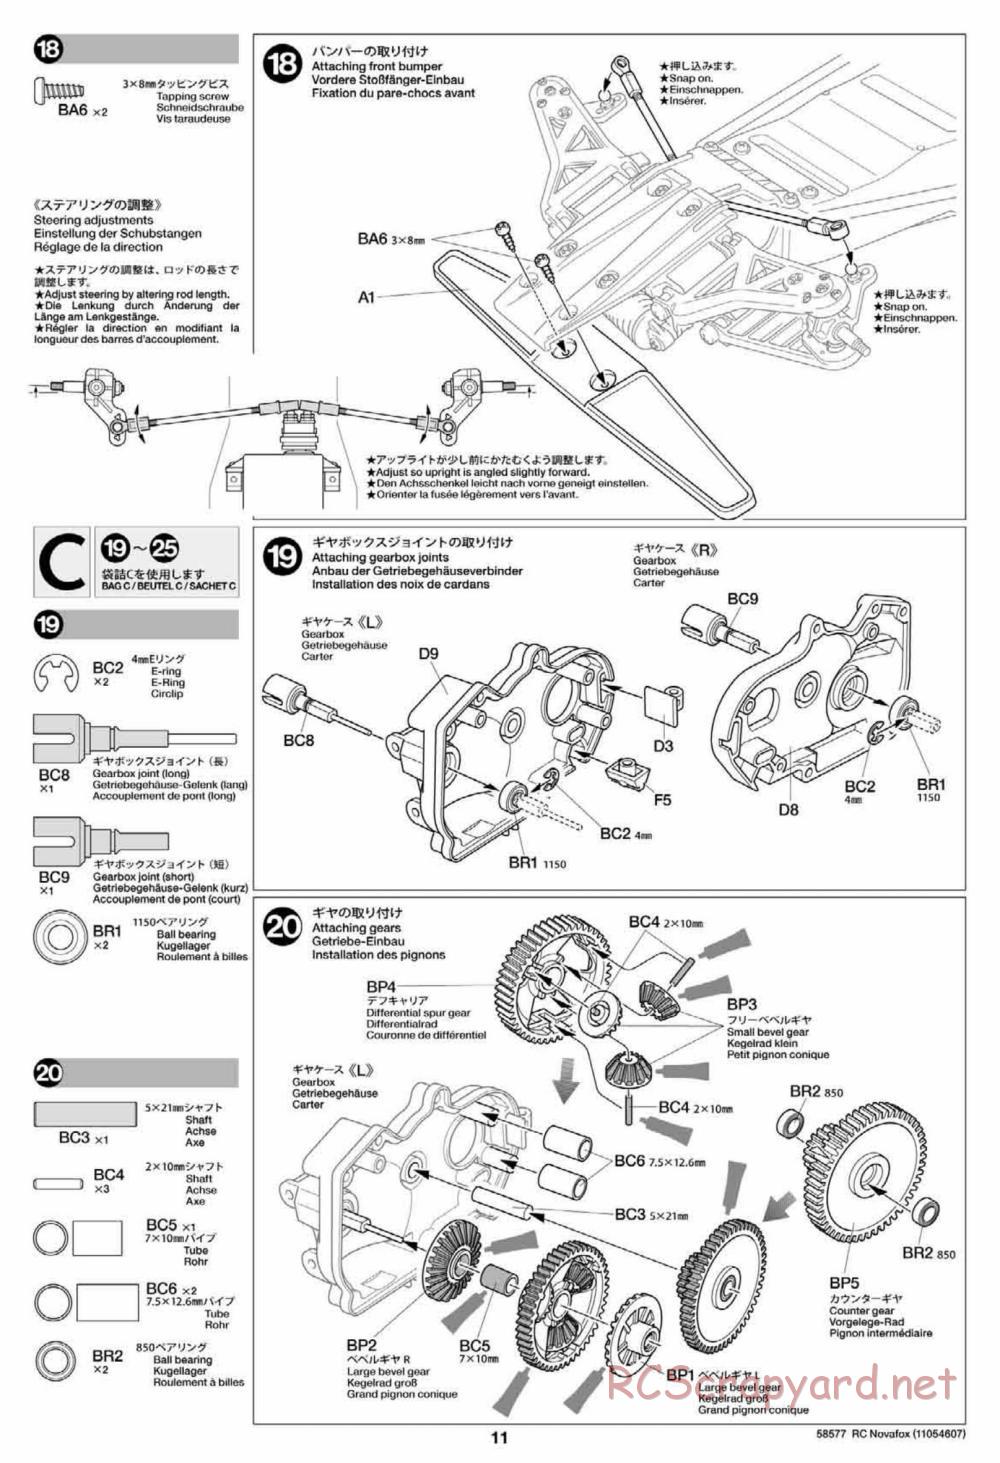 Tamiya - Novafox Chassis - Manual - Page 11